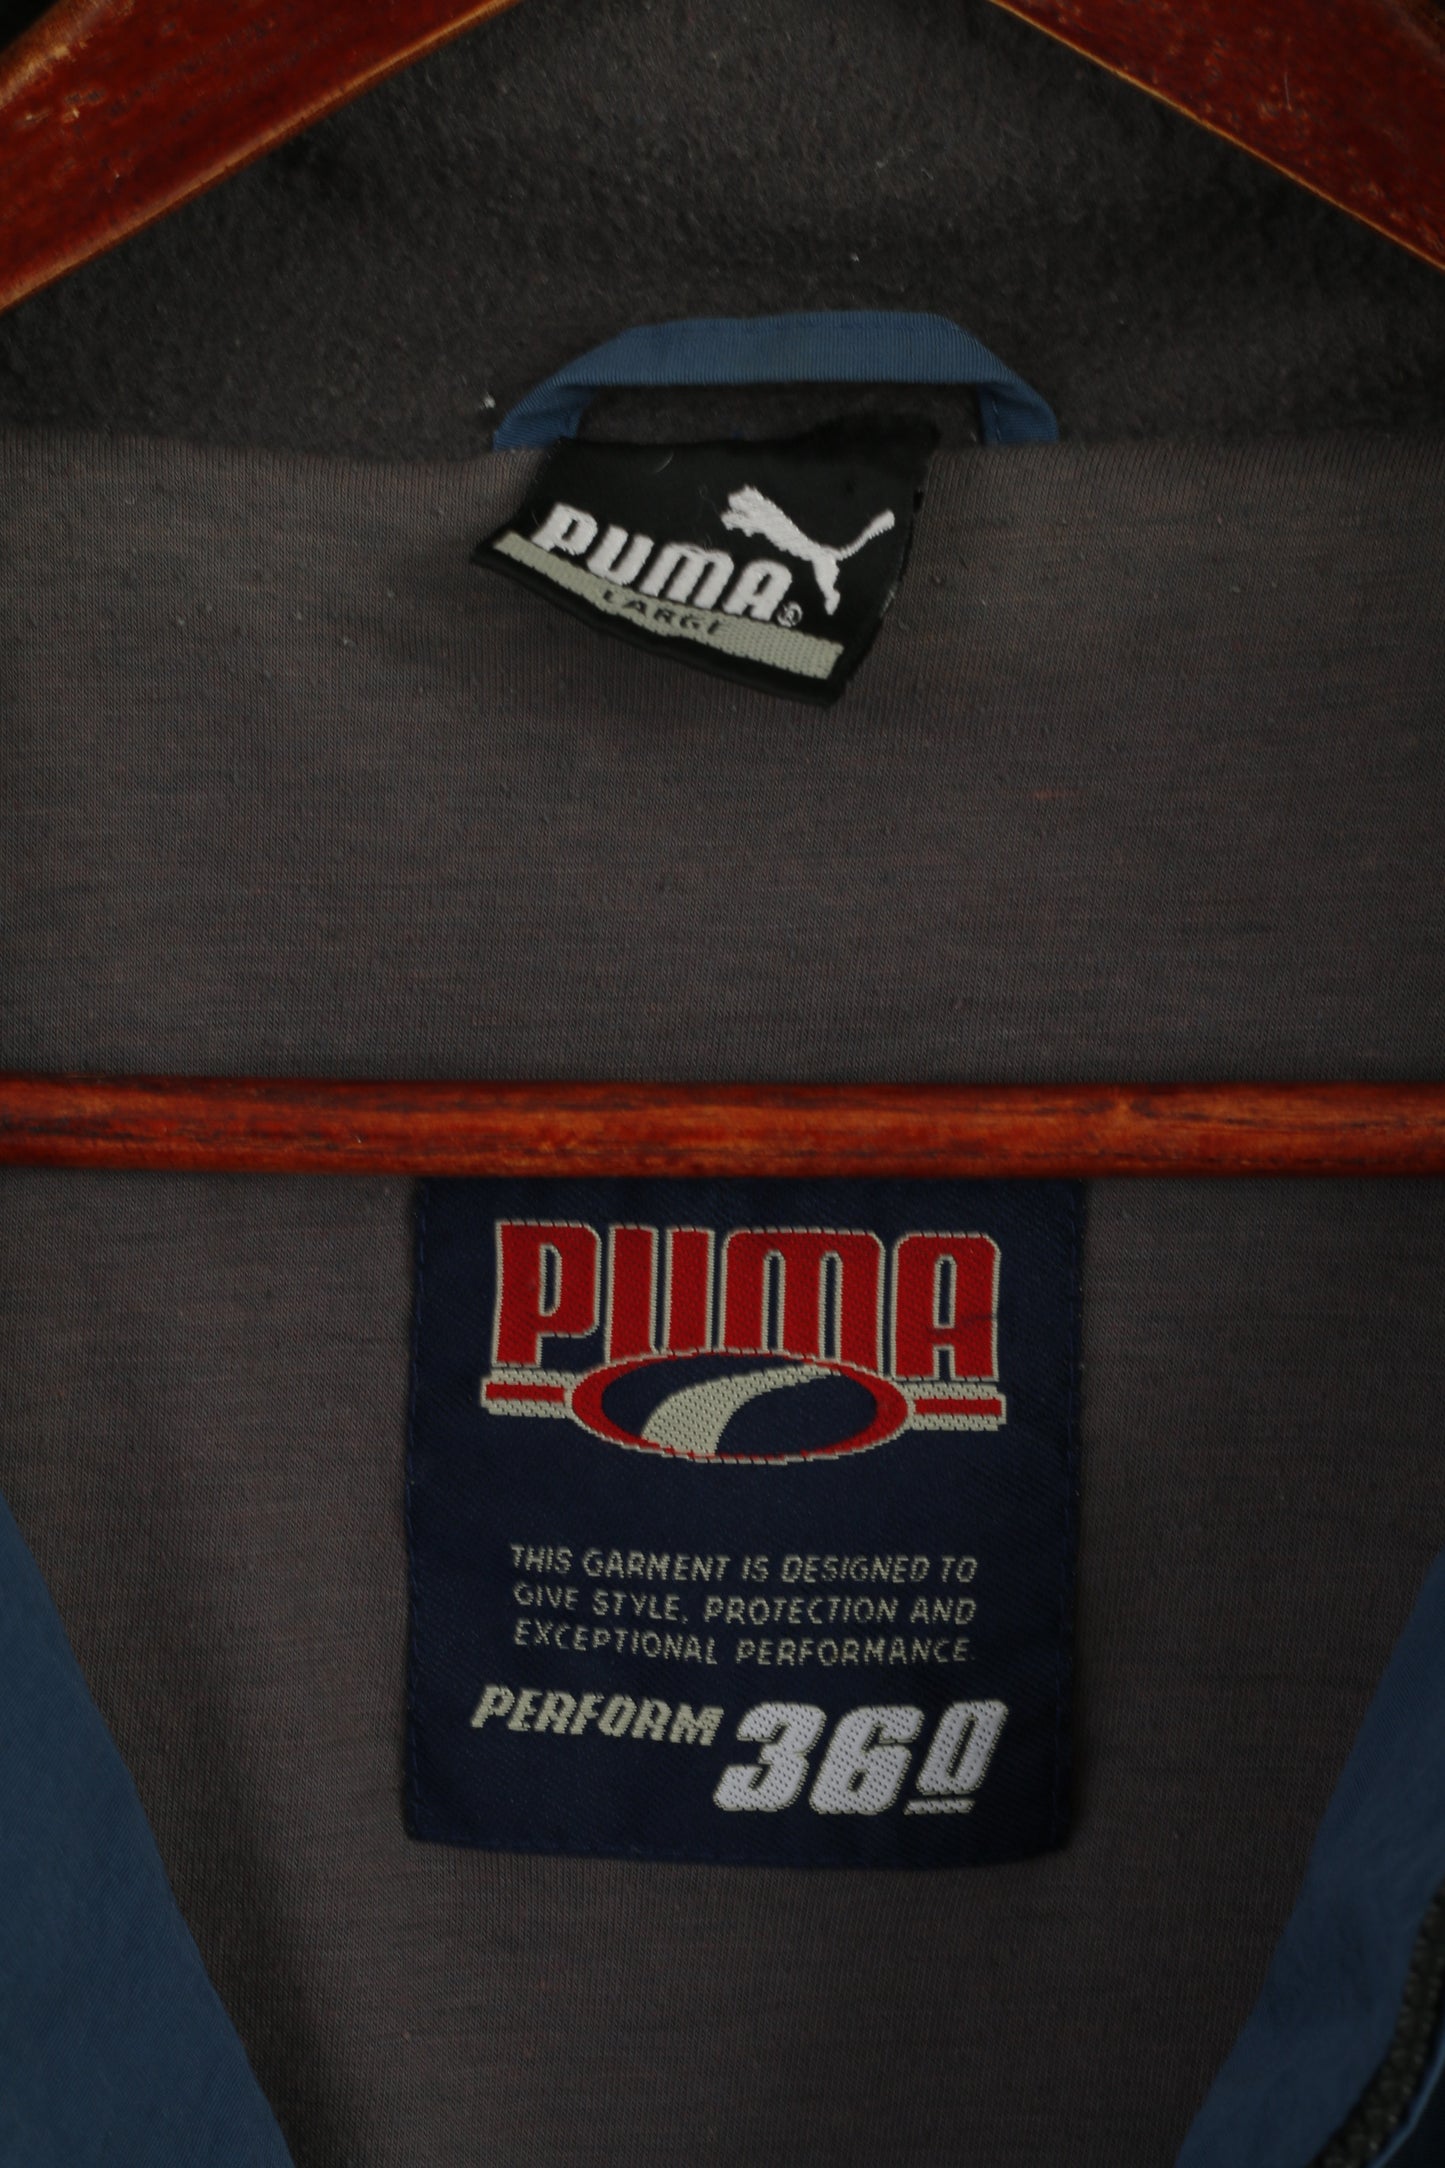 Puma Hommes L Veste Bleu Nylon Perform 360 Full Zipper Vintage Casual Top